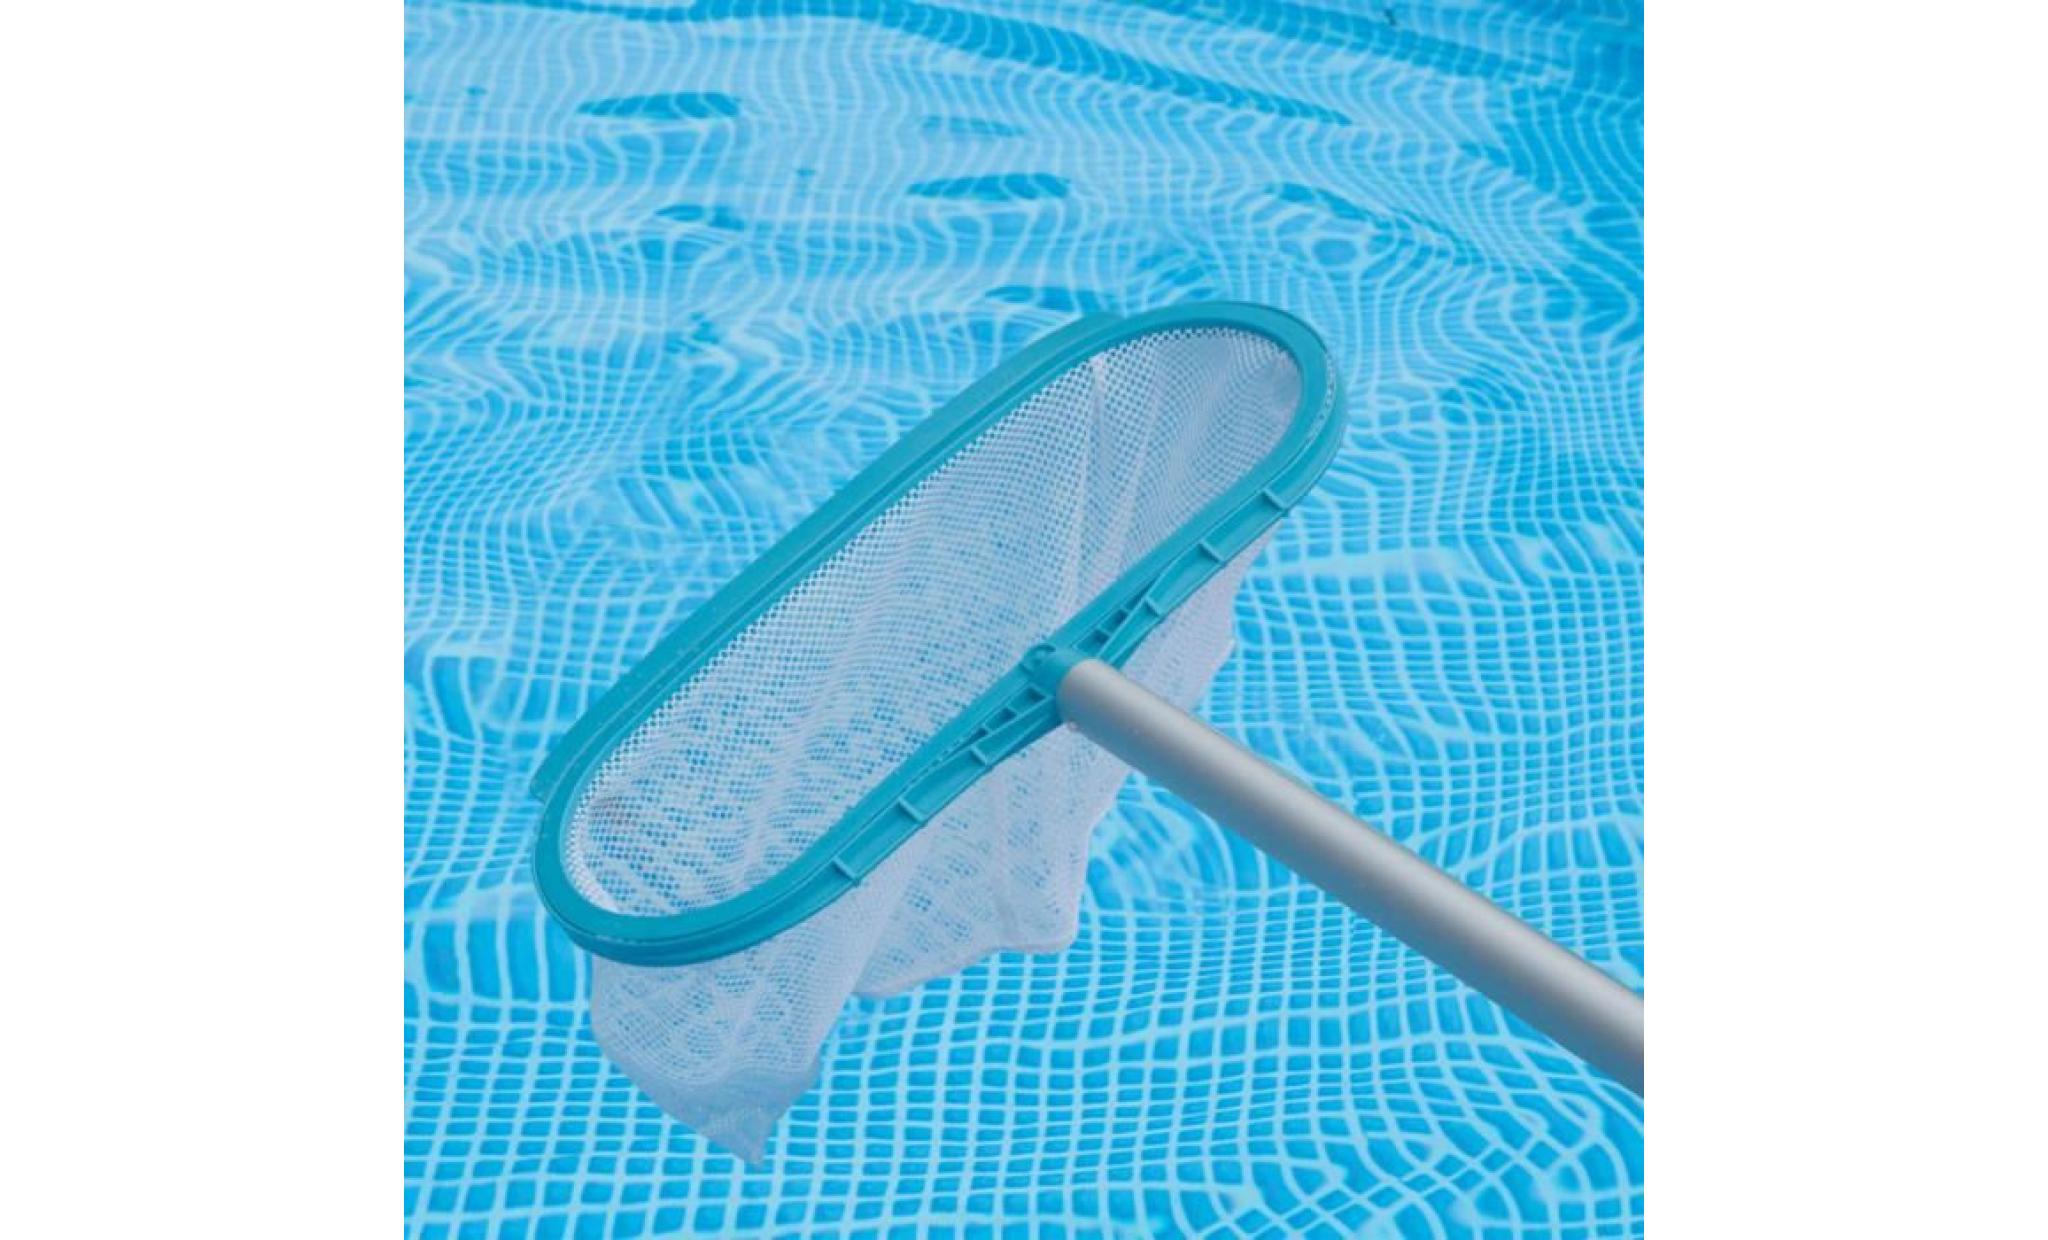 magnifique economique  kit d'entretien pour piscine deluxe pas cher